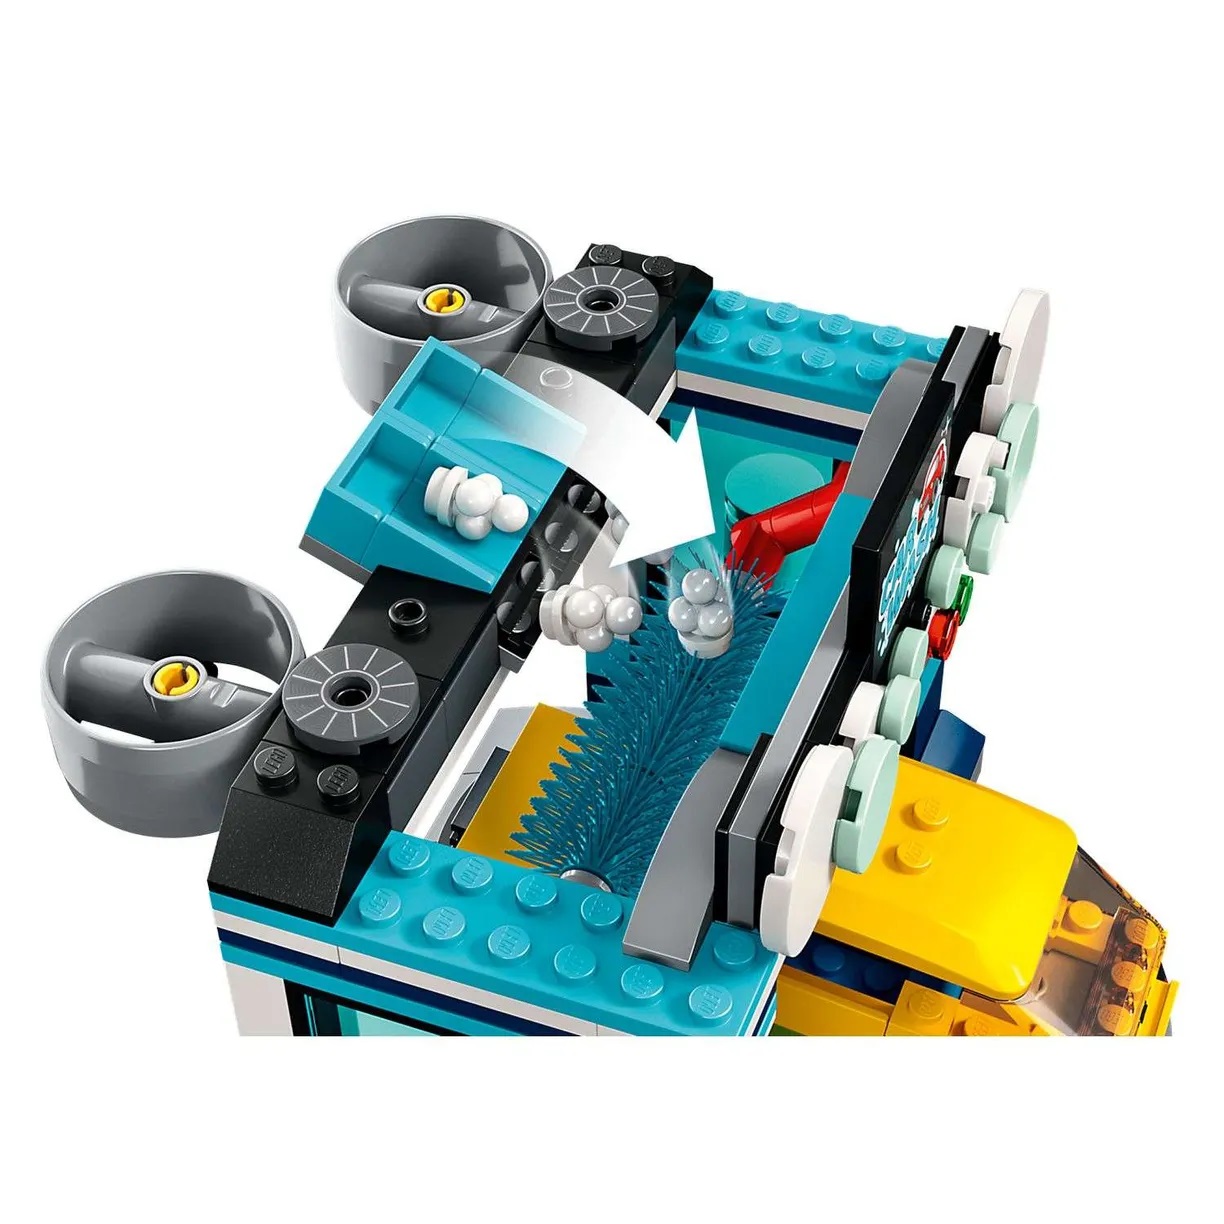 Lego City 60362 Автомойка